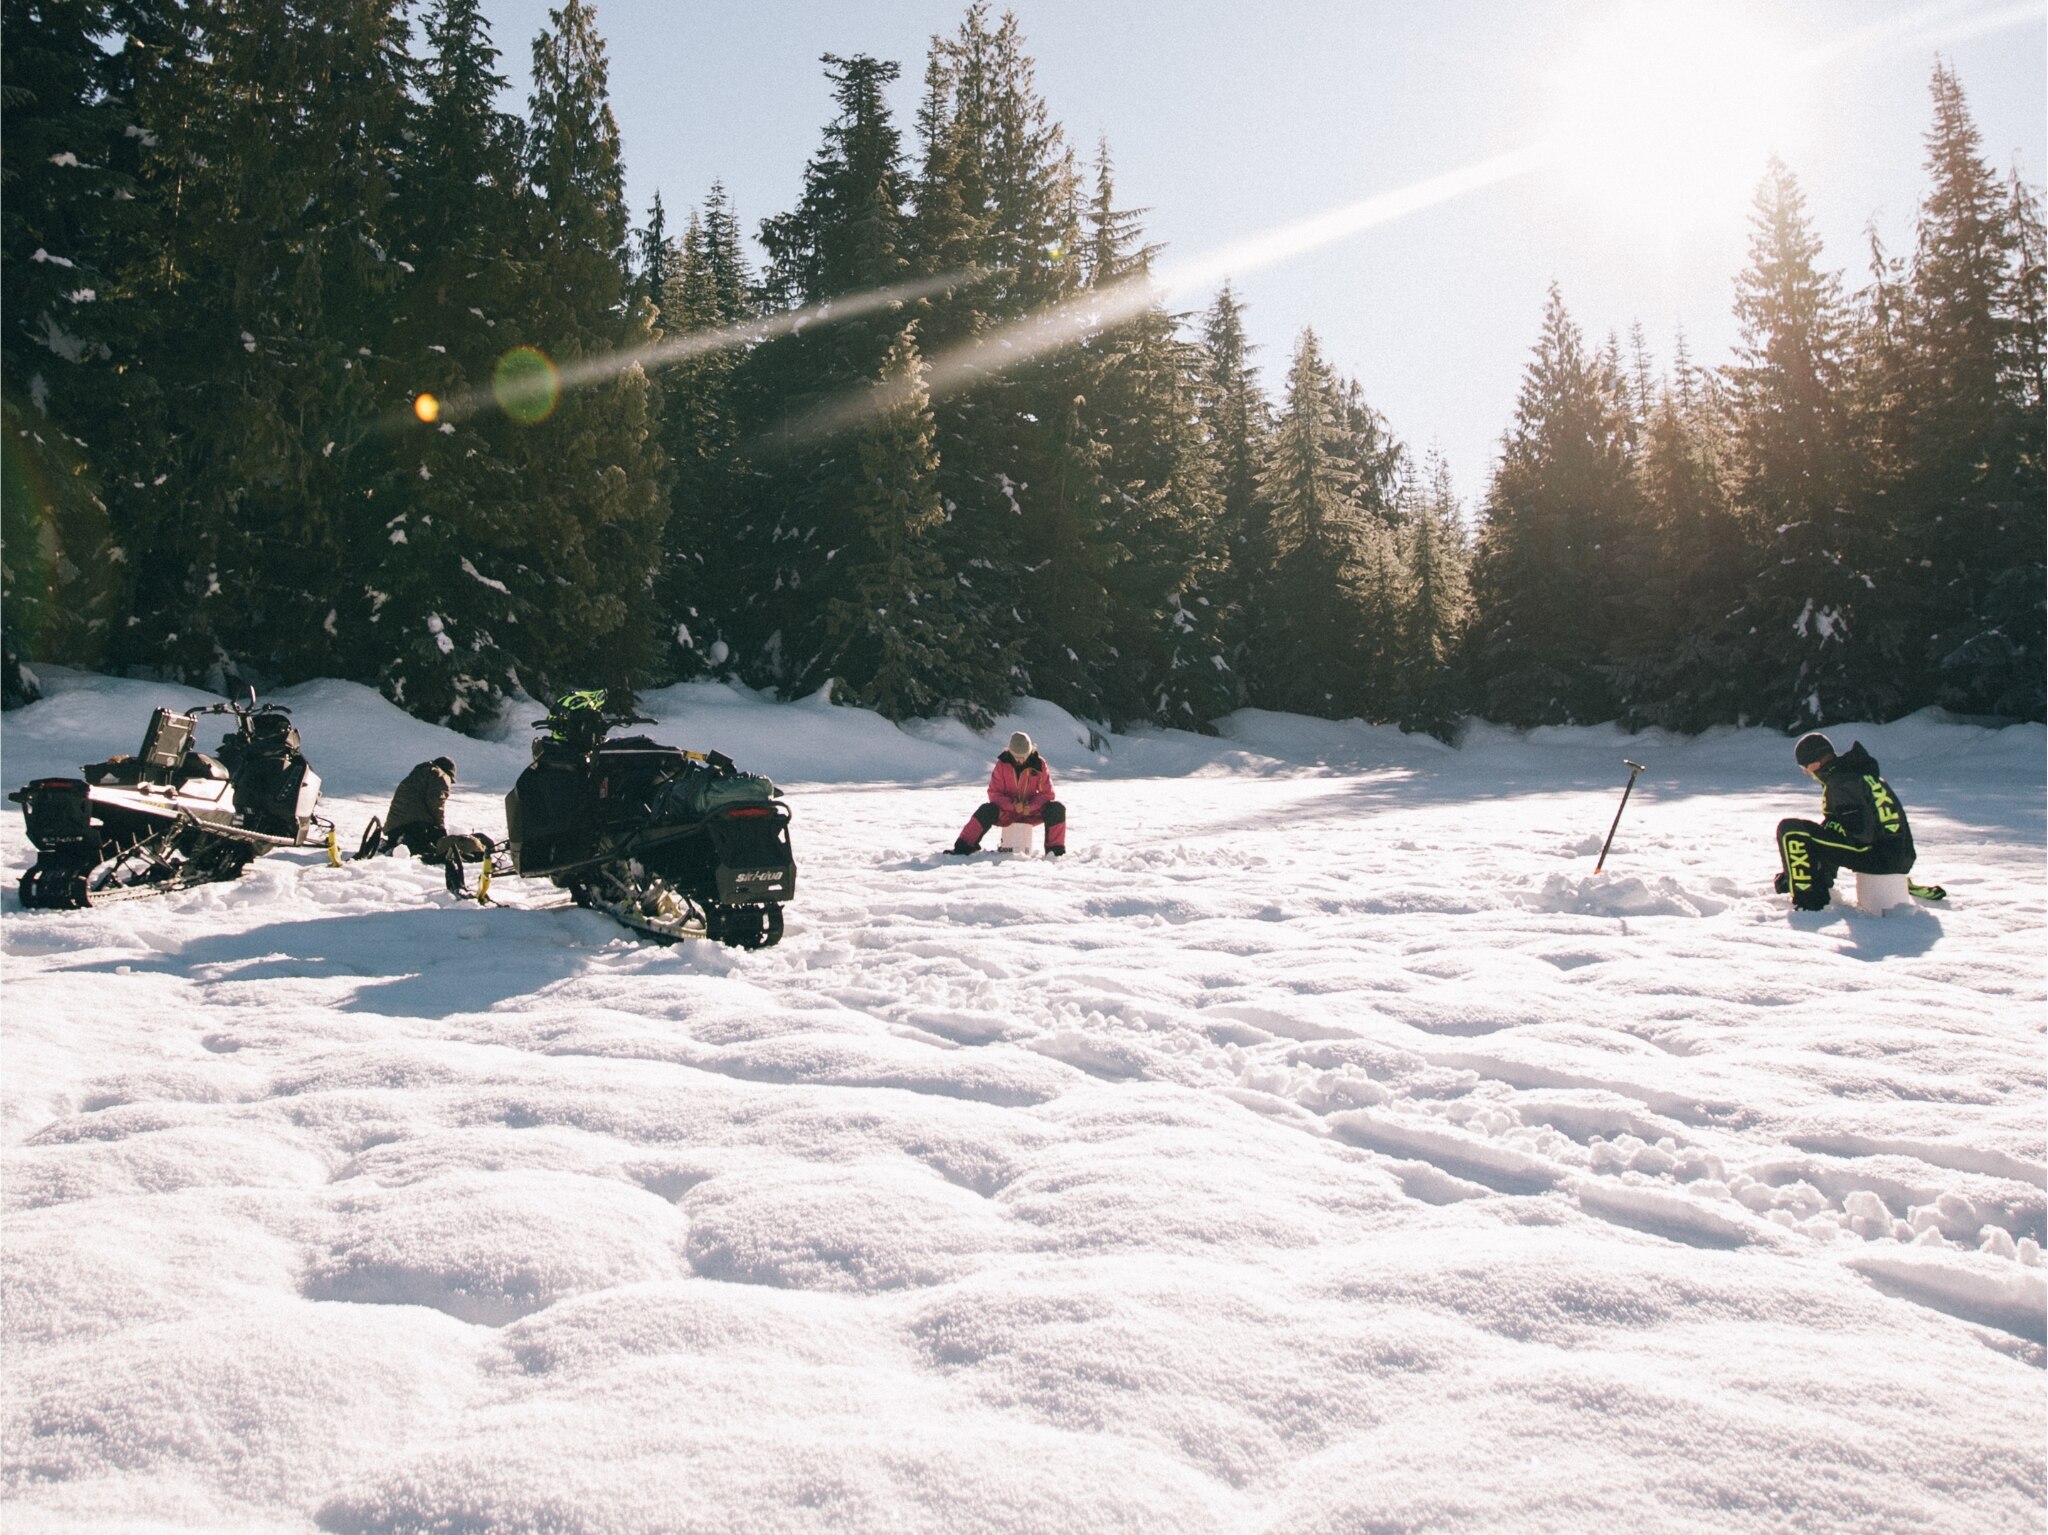 Profitez d'une aventure en Ski-Doo et de la pêche sur glace dans Whistler